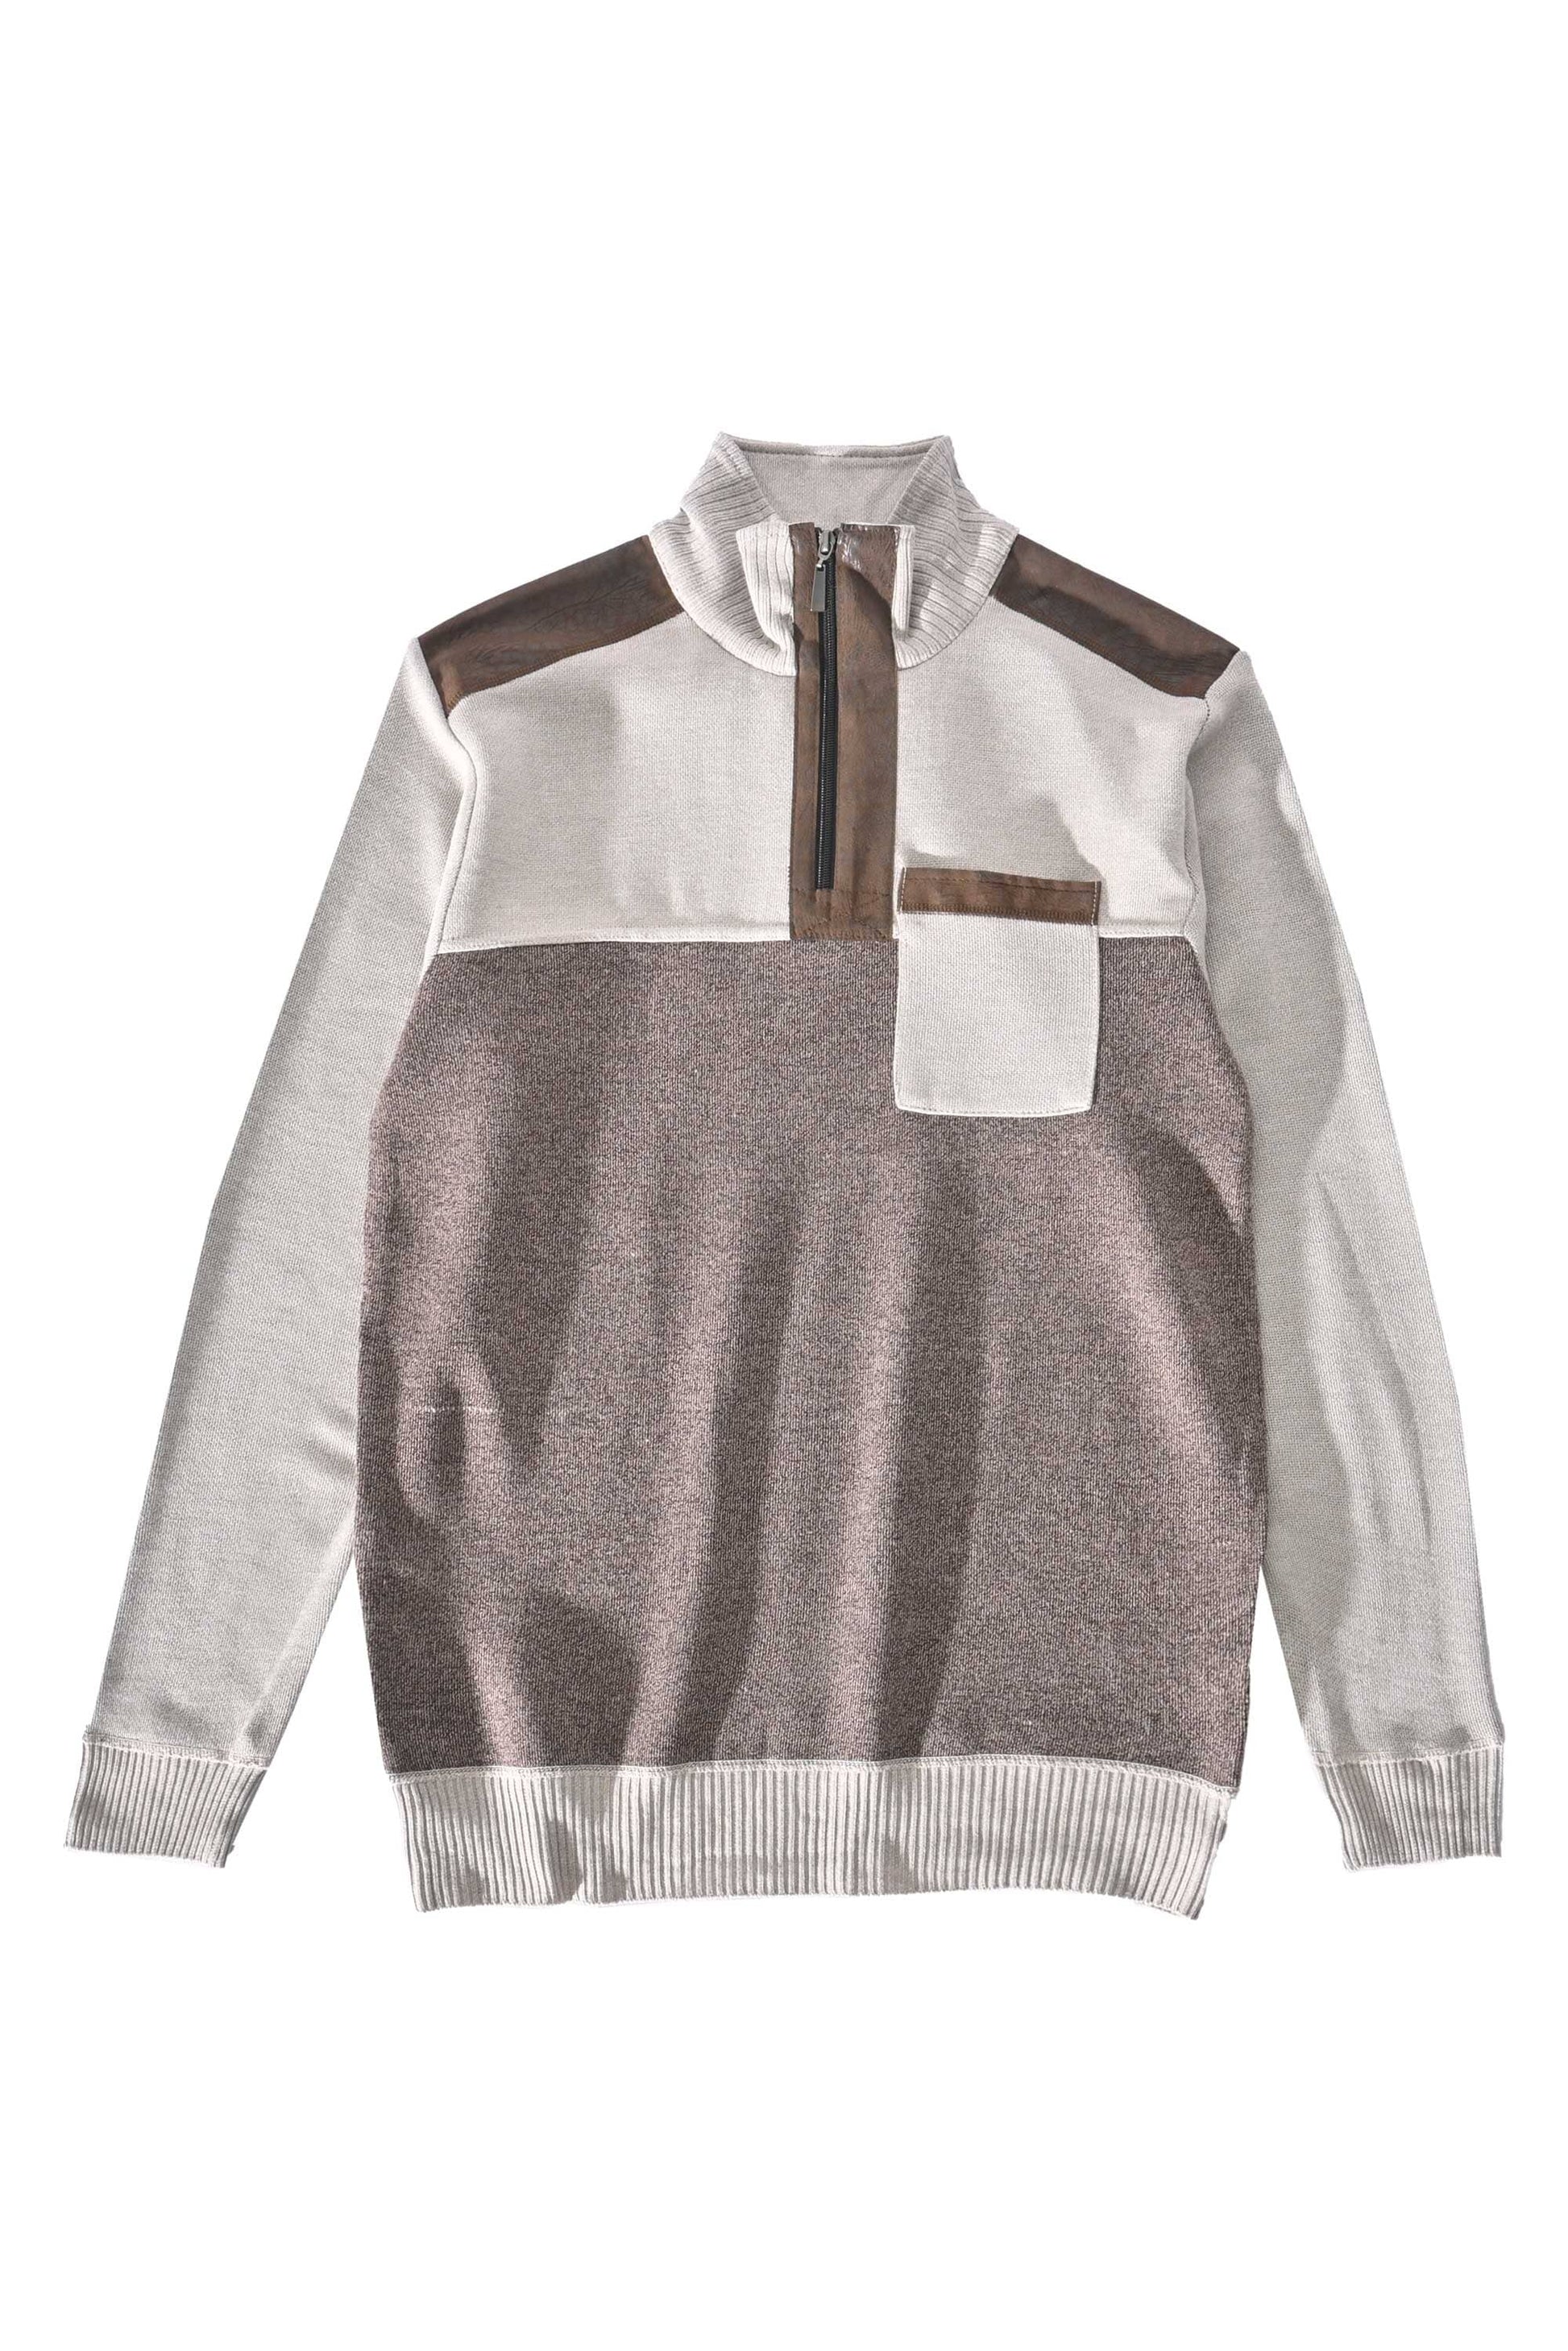 Silver Needle Men's Quarter Zipper Sweater Men's Sweat Shirt First Choice 